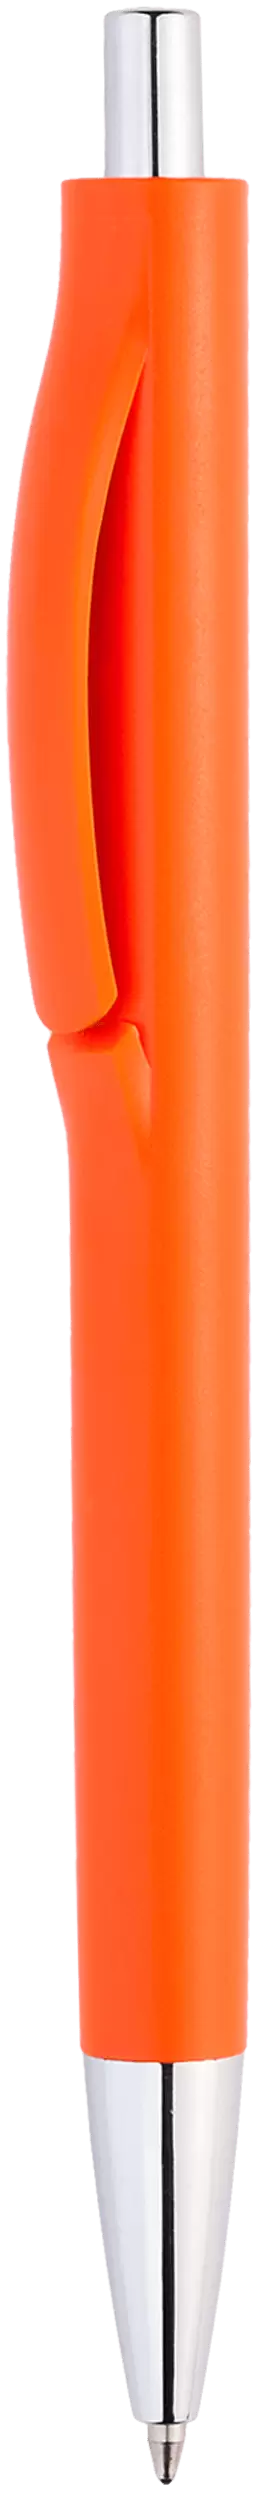 Ручка IGLA CHROME Оранжевая 1032-05